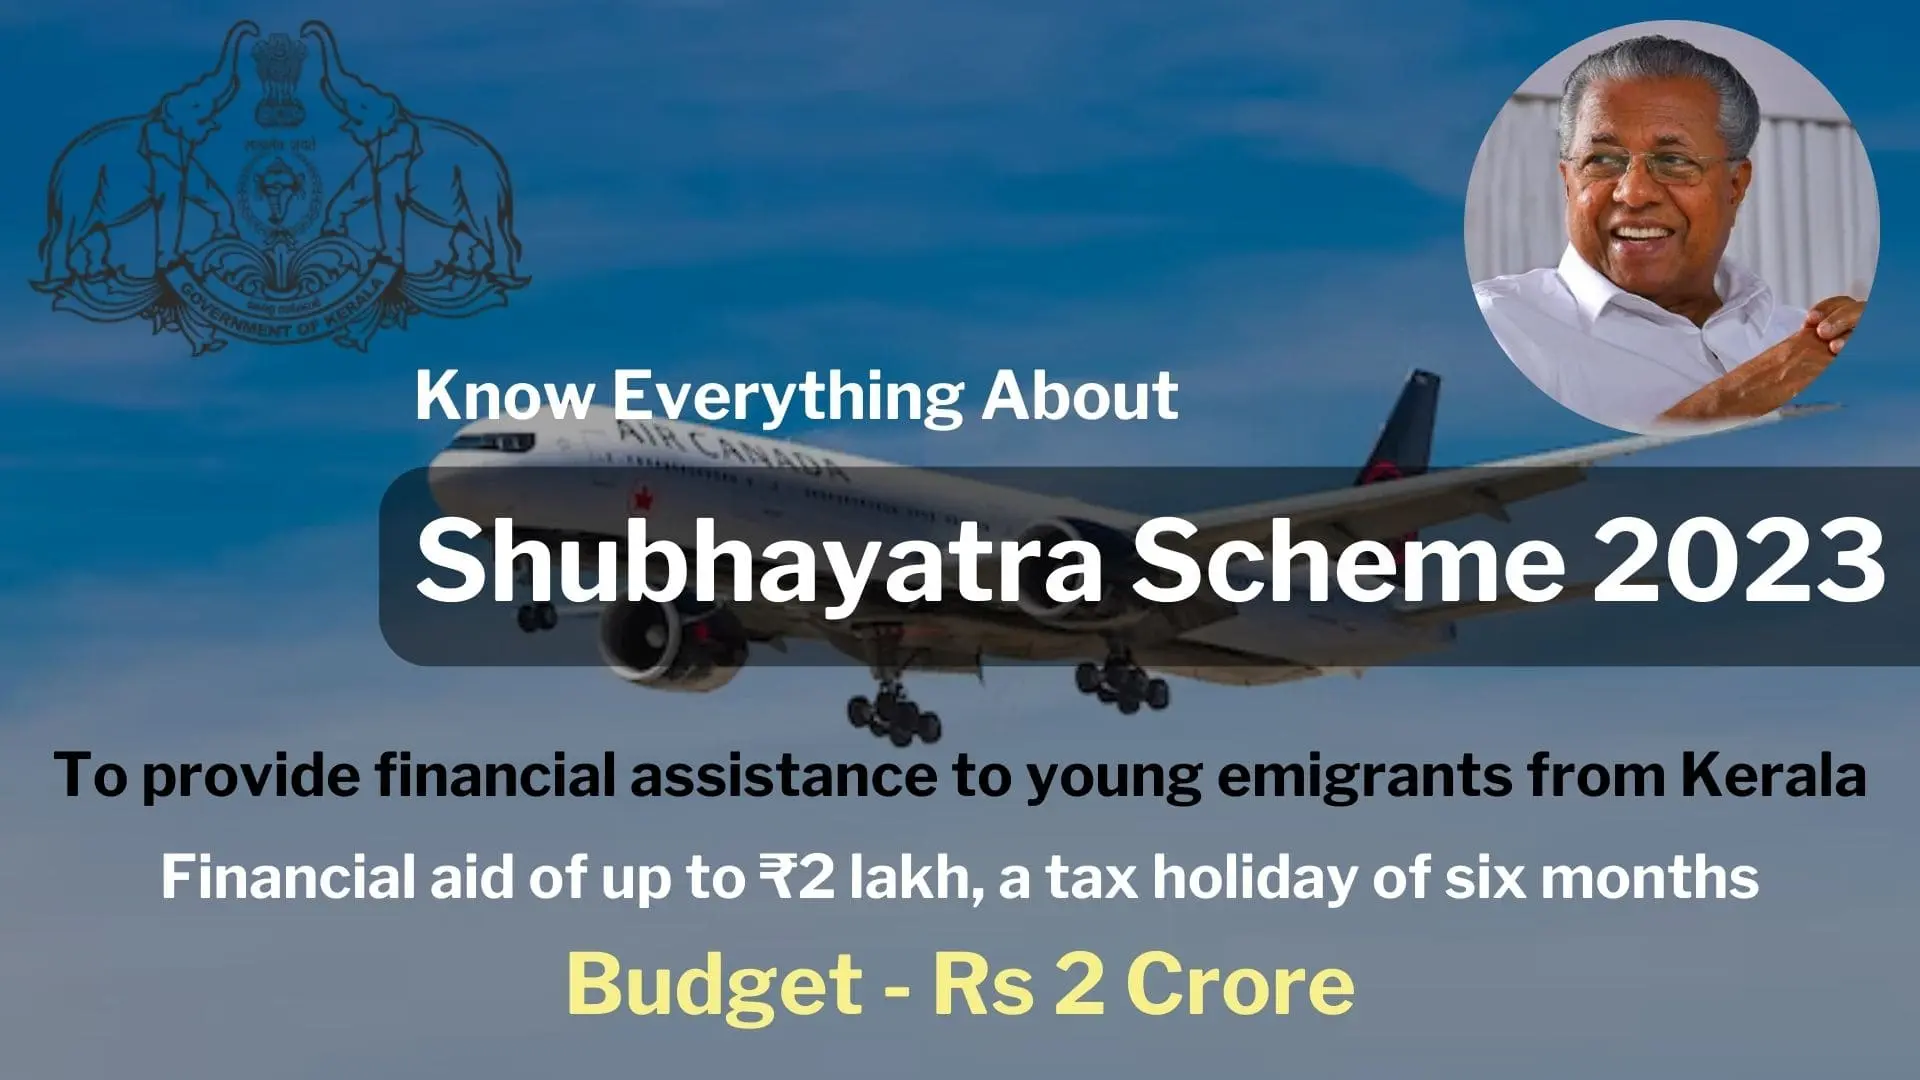 Shubhayatra Scheme